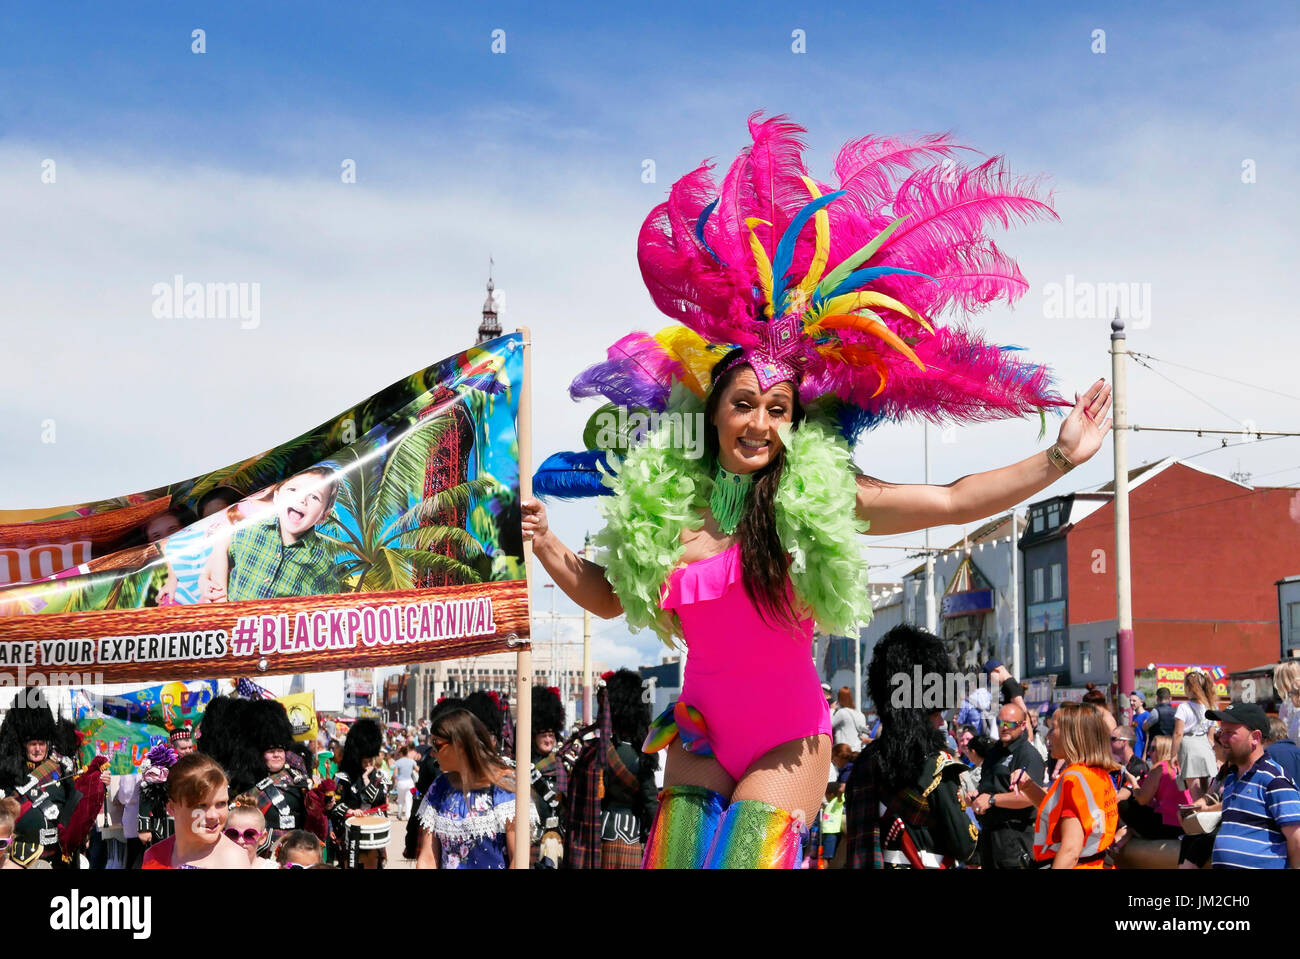 Blackpool Carnevale Internazionale. Affascinante ragazza su palafitte indossando costumi colorati sventolando la folla Foto Stock